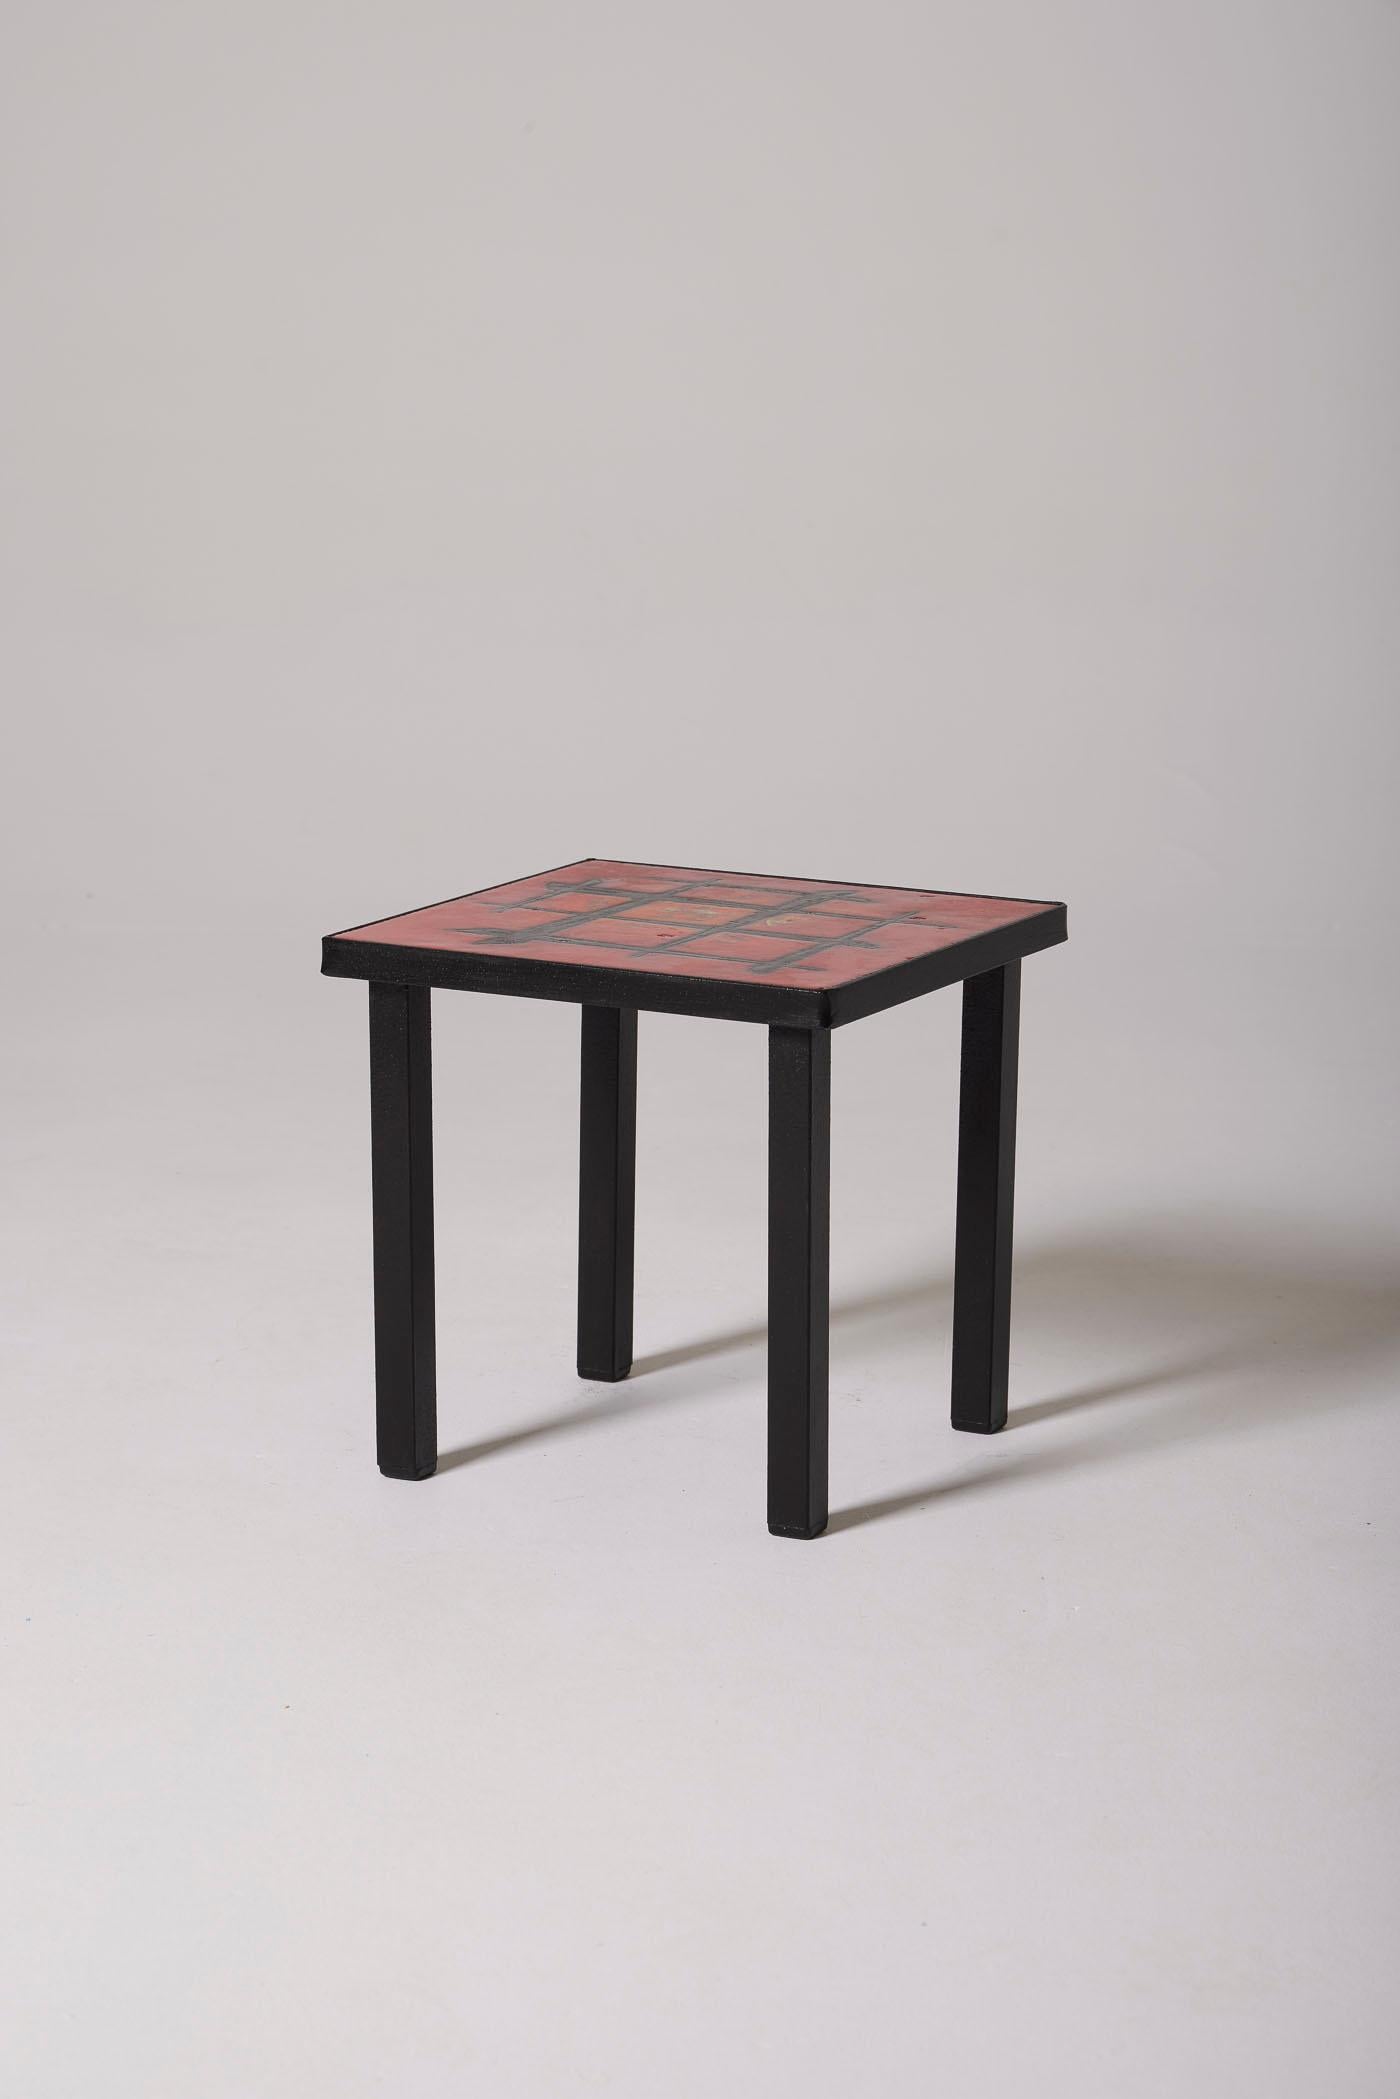 Table basse ou table d'appoint en carreaux de lave émaillée rouge par les céramistes Robert et Jean Cloutier, années 1950. Le plateau à décor géométrique repose sur une base en métal laqué noir. En parfait état.
DV493